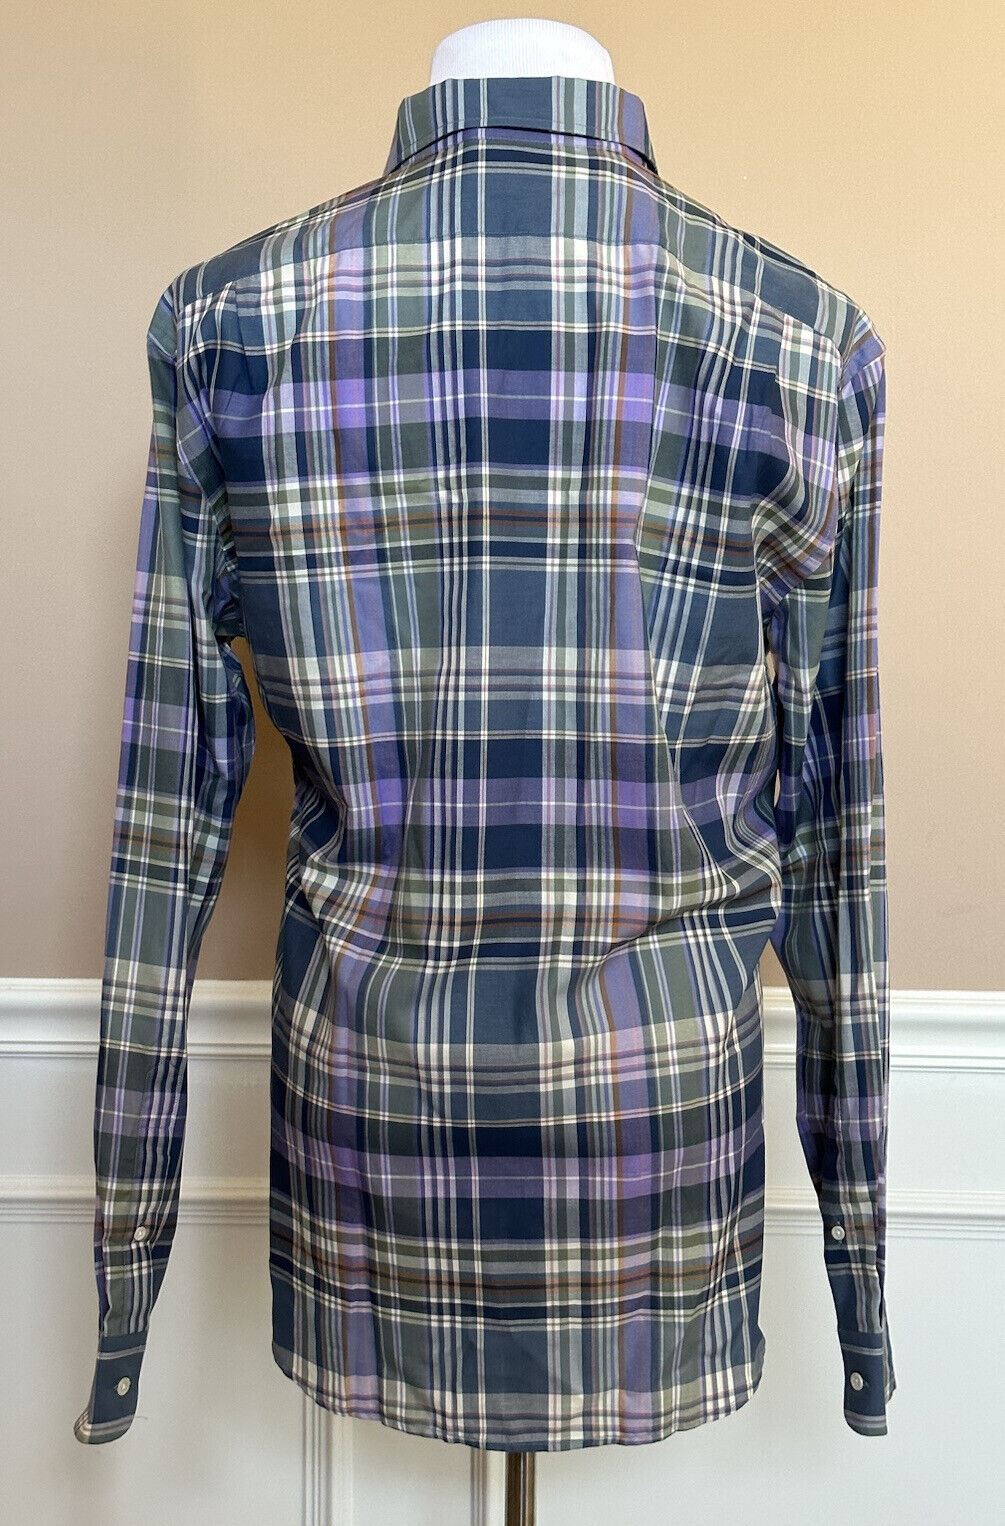 Neu mit Etikett: 495 $ Ralph Lauren Purple Label Baumwoll-Herrenhemd XL, hergestellt in Italien 